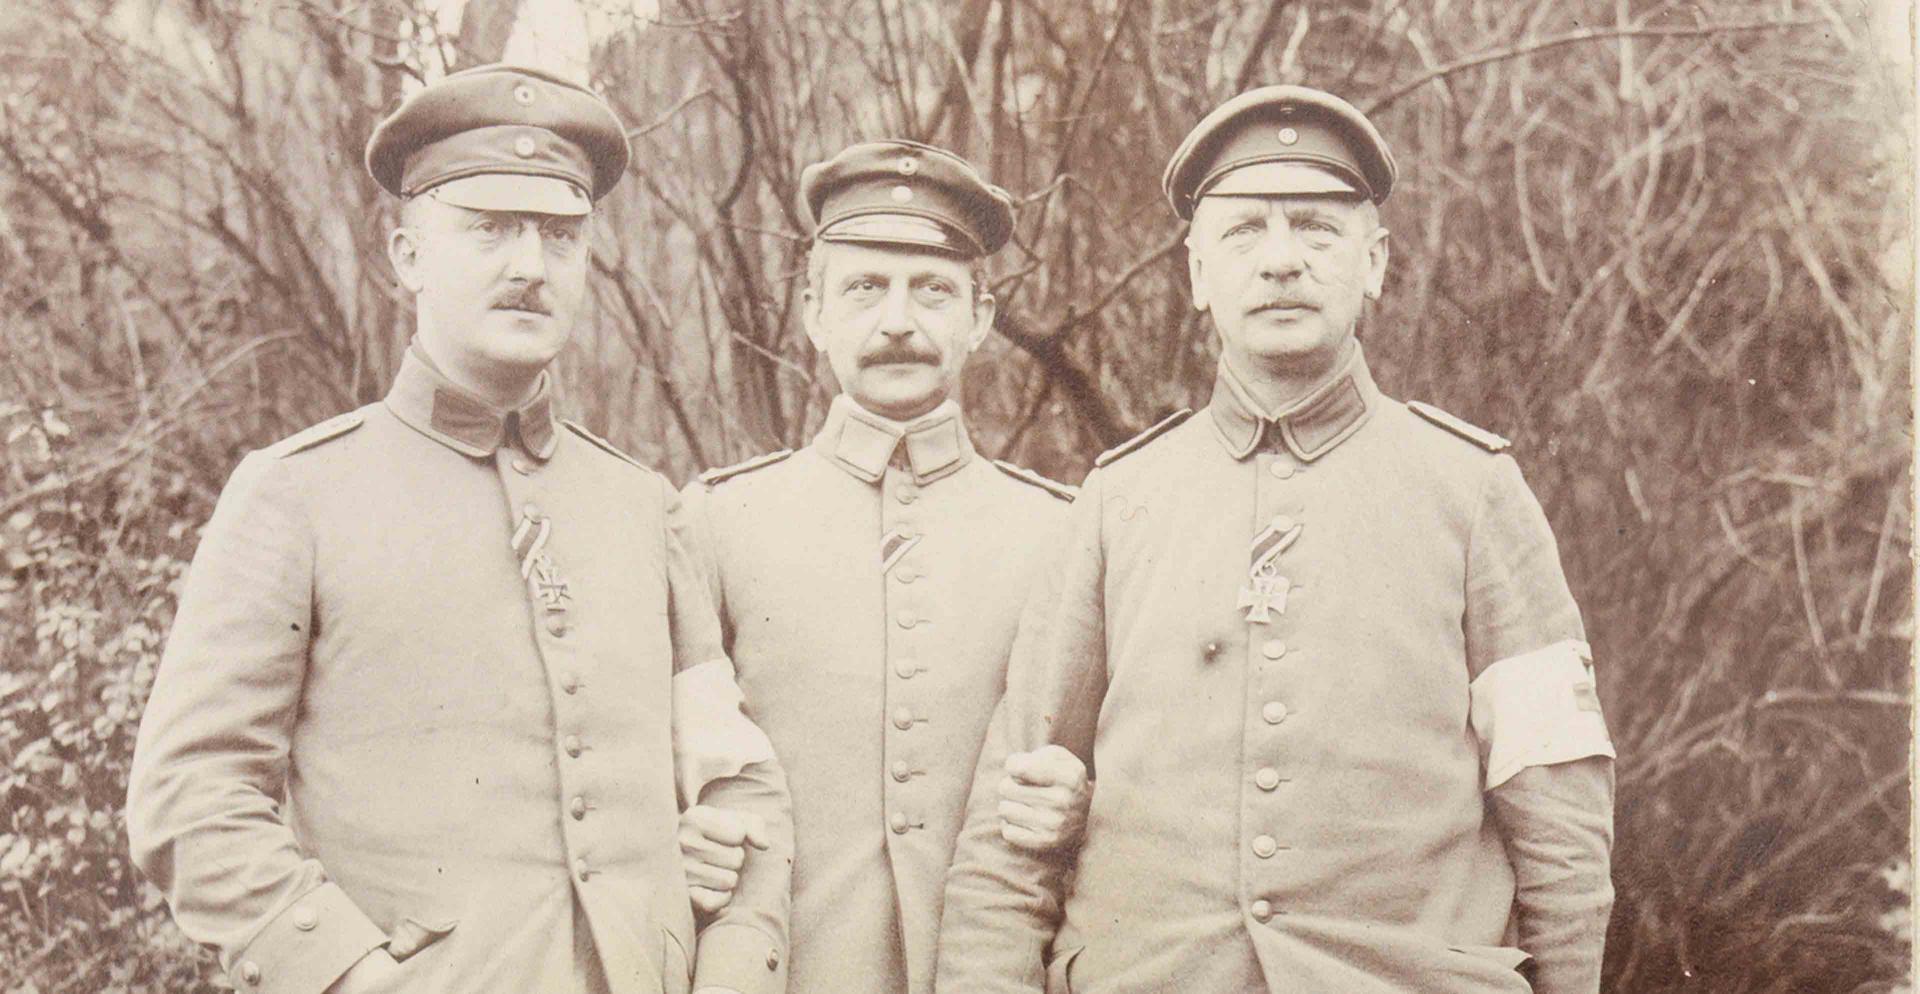 Schwarz-weiß Fotografie mit drei uniformierten Soldaten frontal und stehend vor einer Grünanlage.